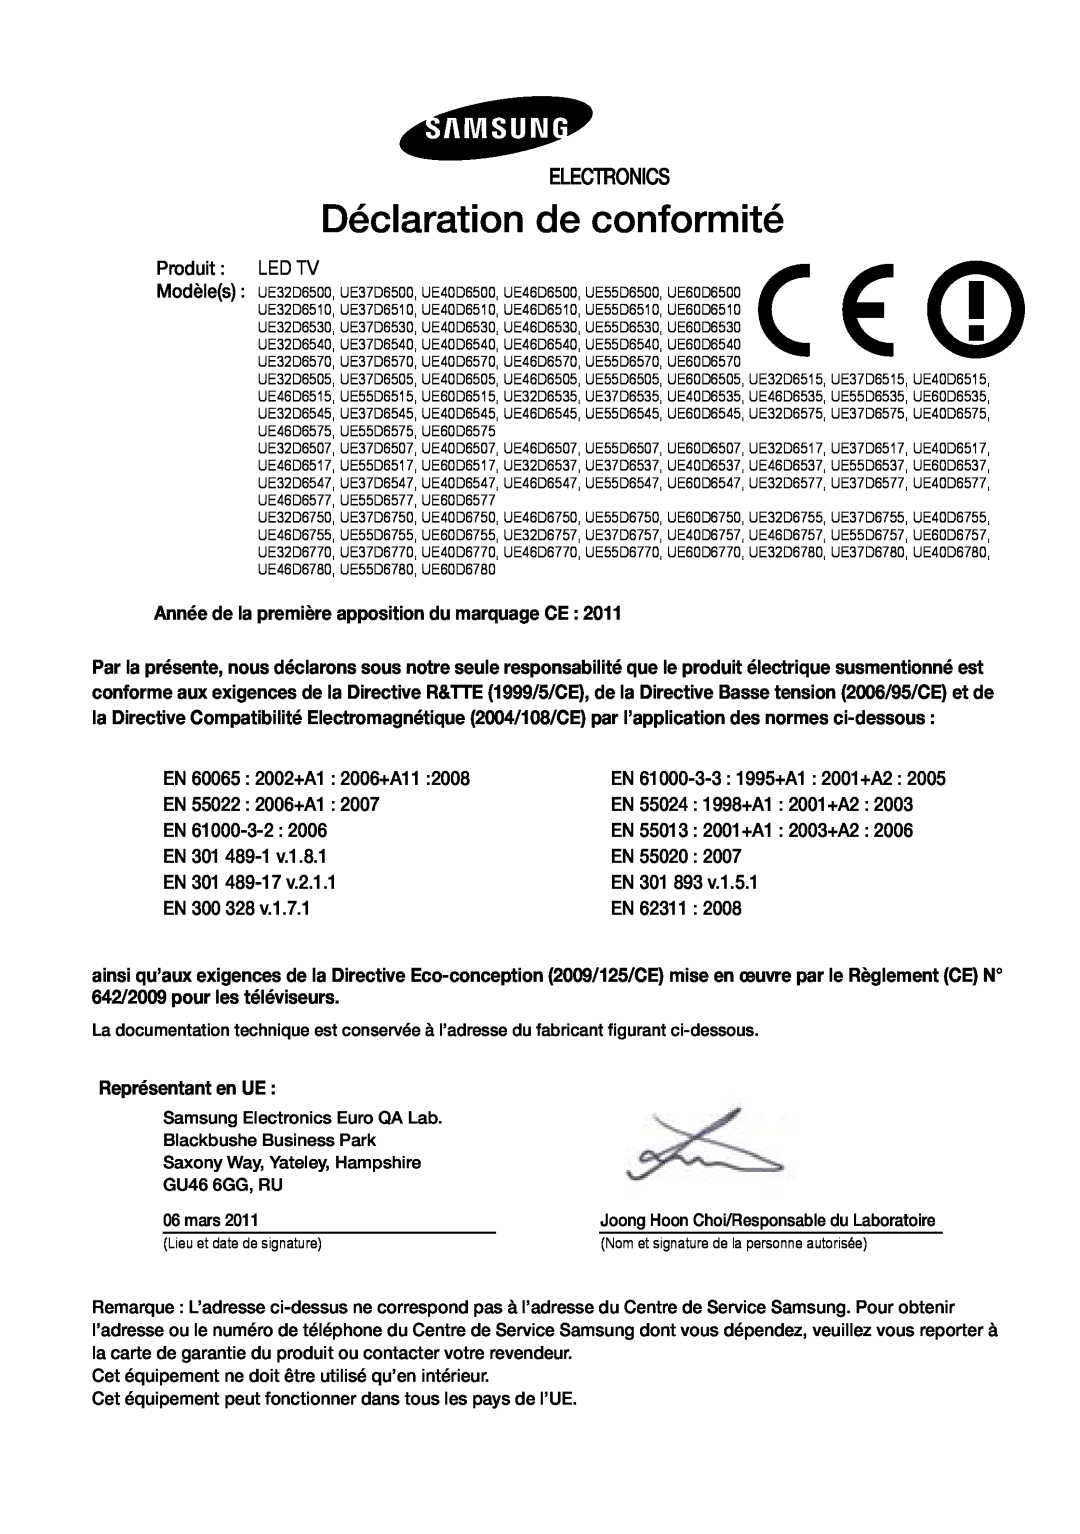 Samsung UE46D6200TSXZF manual Déclaration de conformité, Electronics, Année de la première apposition du marquage CE 